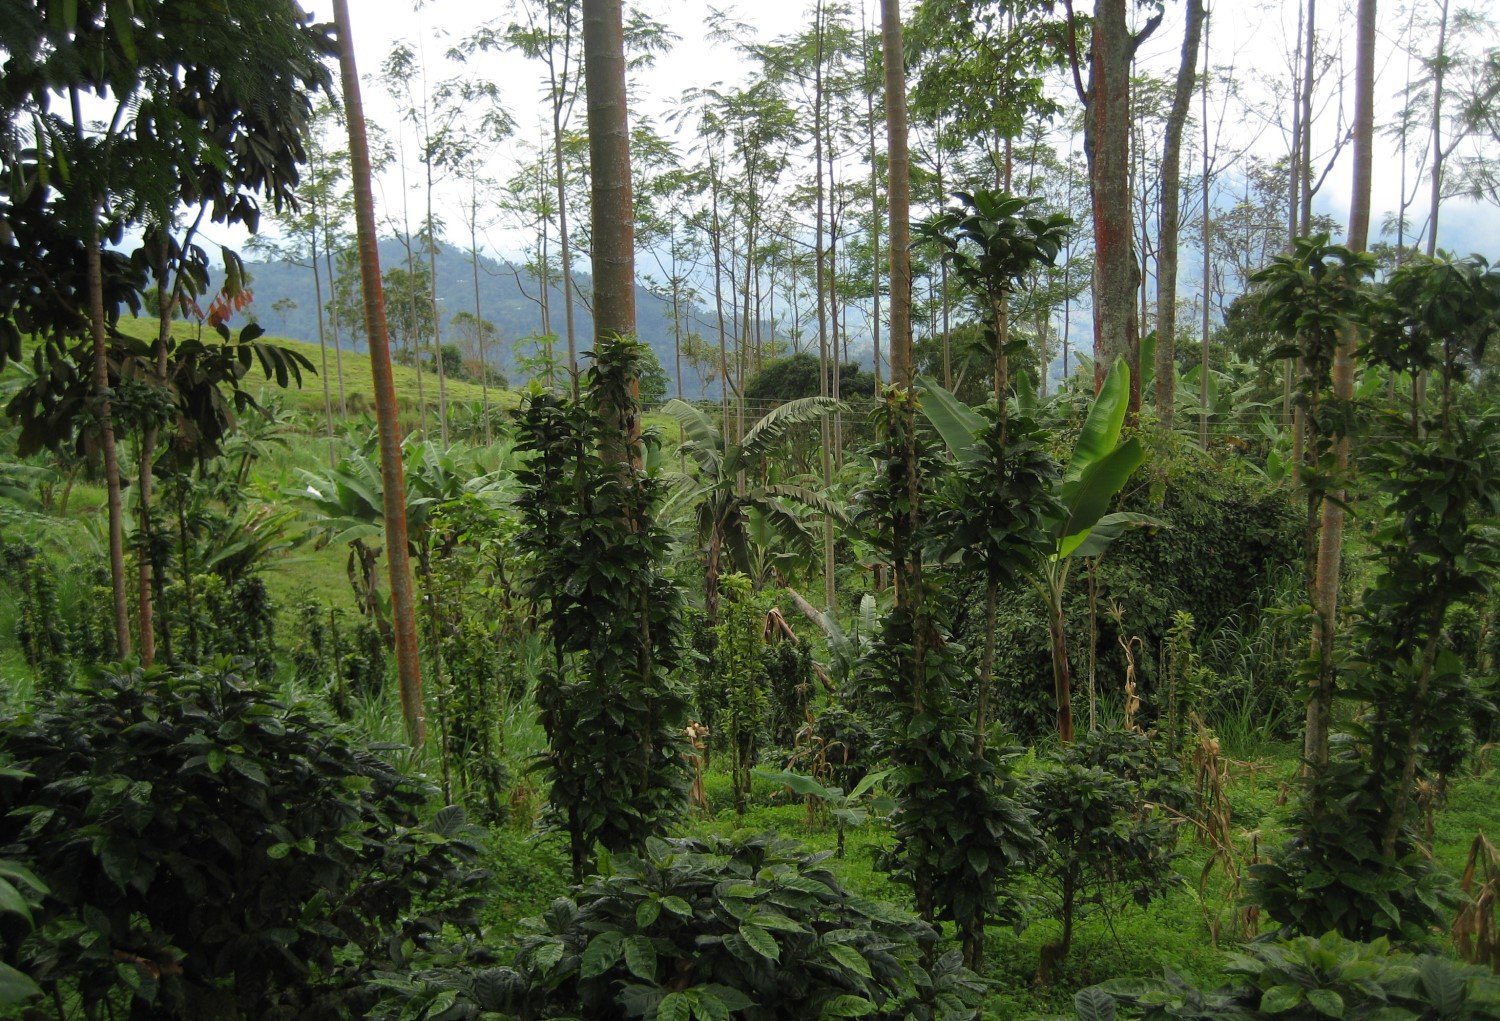 A shaded coffee farm